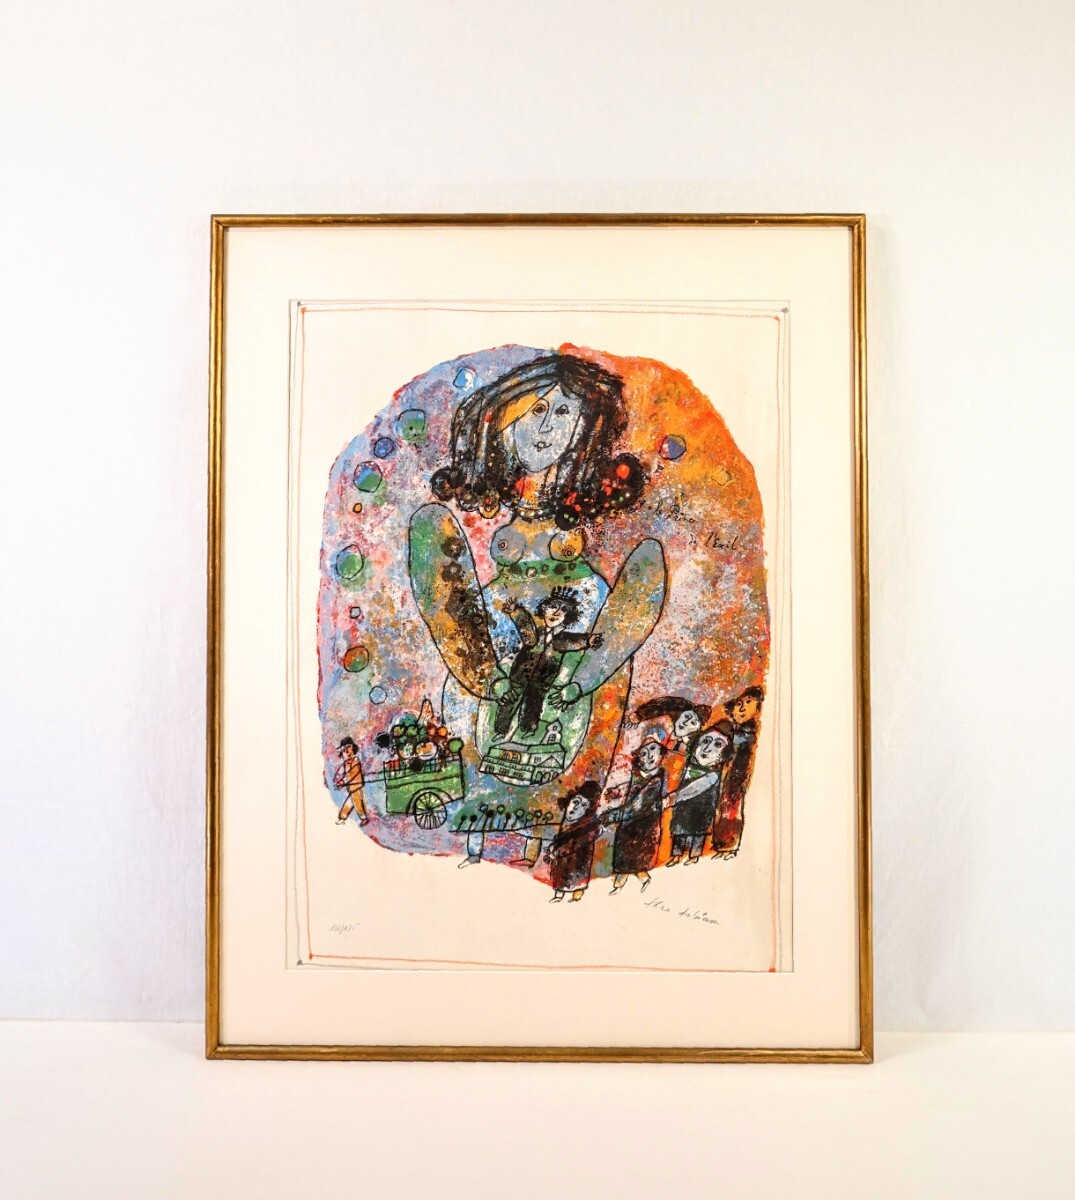 真作 テオ・トビアス リトグラフ「亡国の王子」画寸 57cm×76cm イスラエル人作家 クレヨンを濃く塗りつけた様な独特の強烈な色彩 9006_画像1